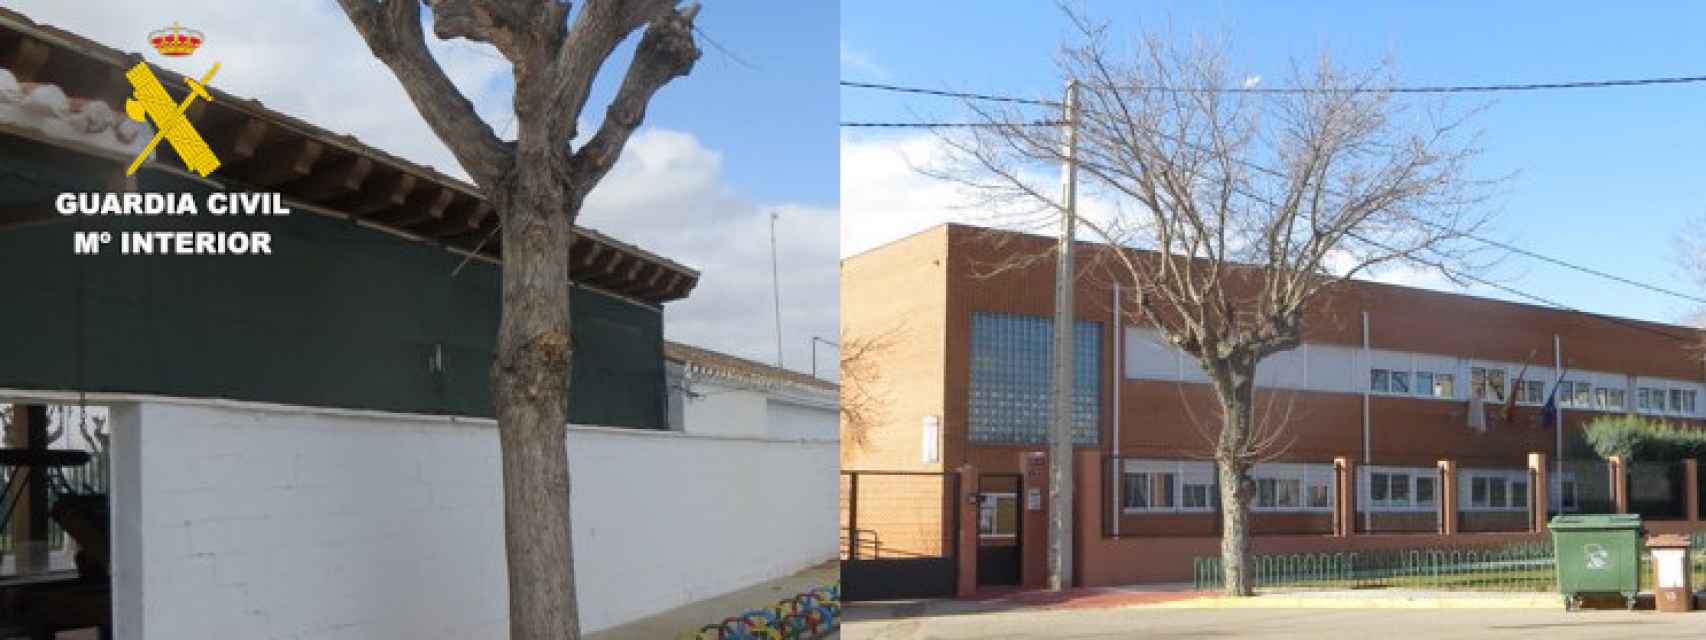 Fotomontaje con los exteriores de la piscina municipal y el colegio de Barrax (Albacete).